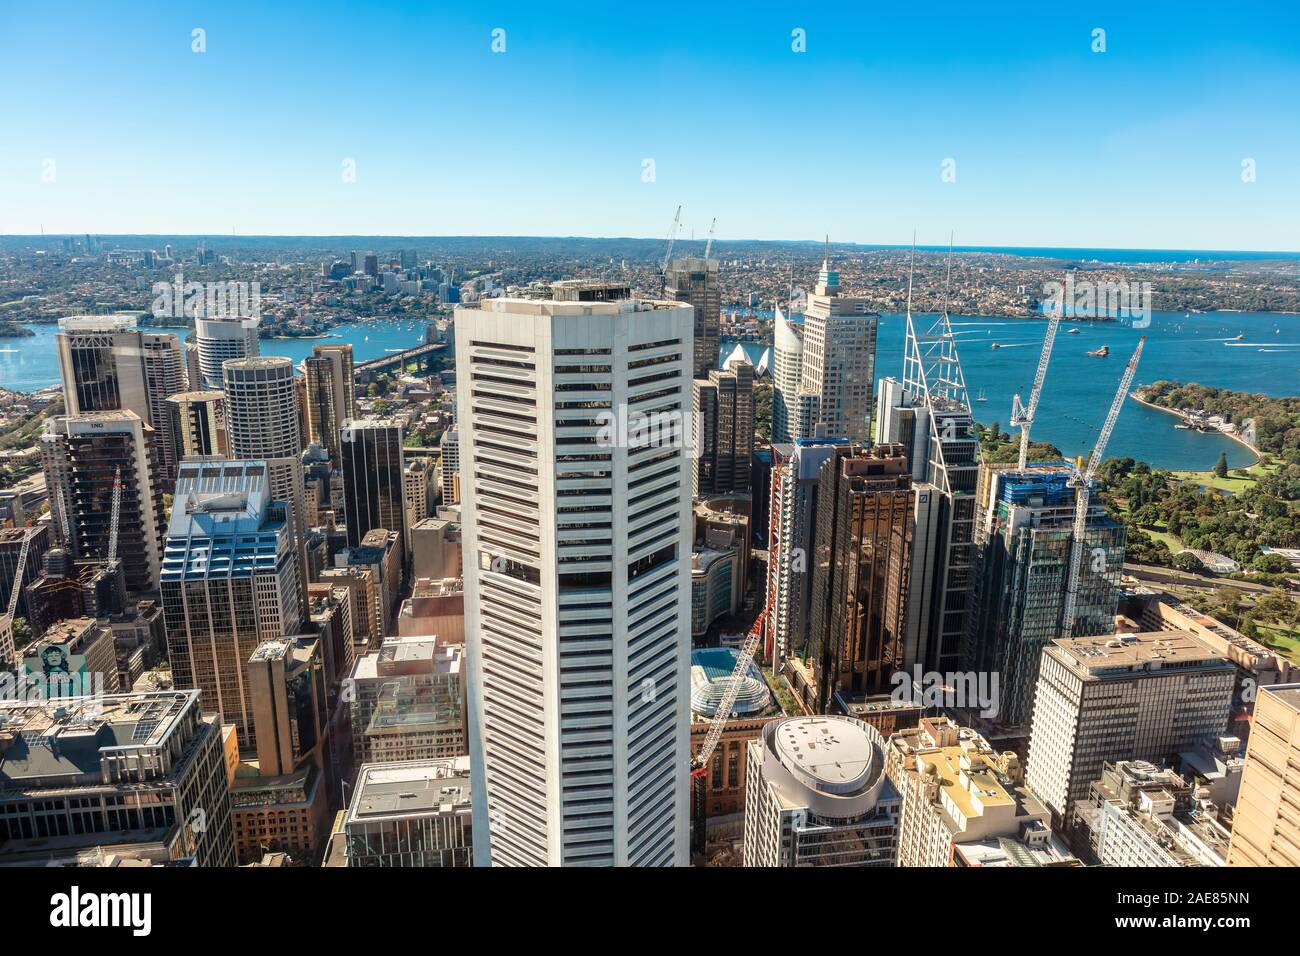 La città di Sydney, Australia mostra veduta aerea del quartiere centrale degli affari. Foto Stock